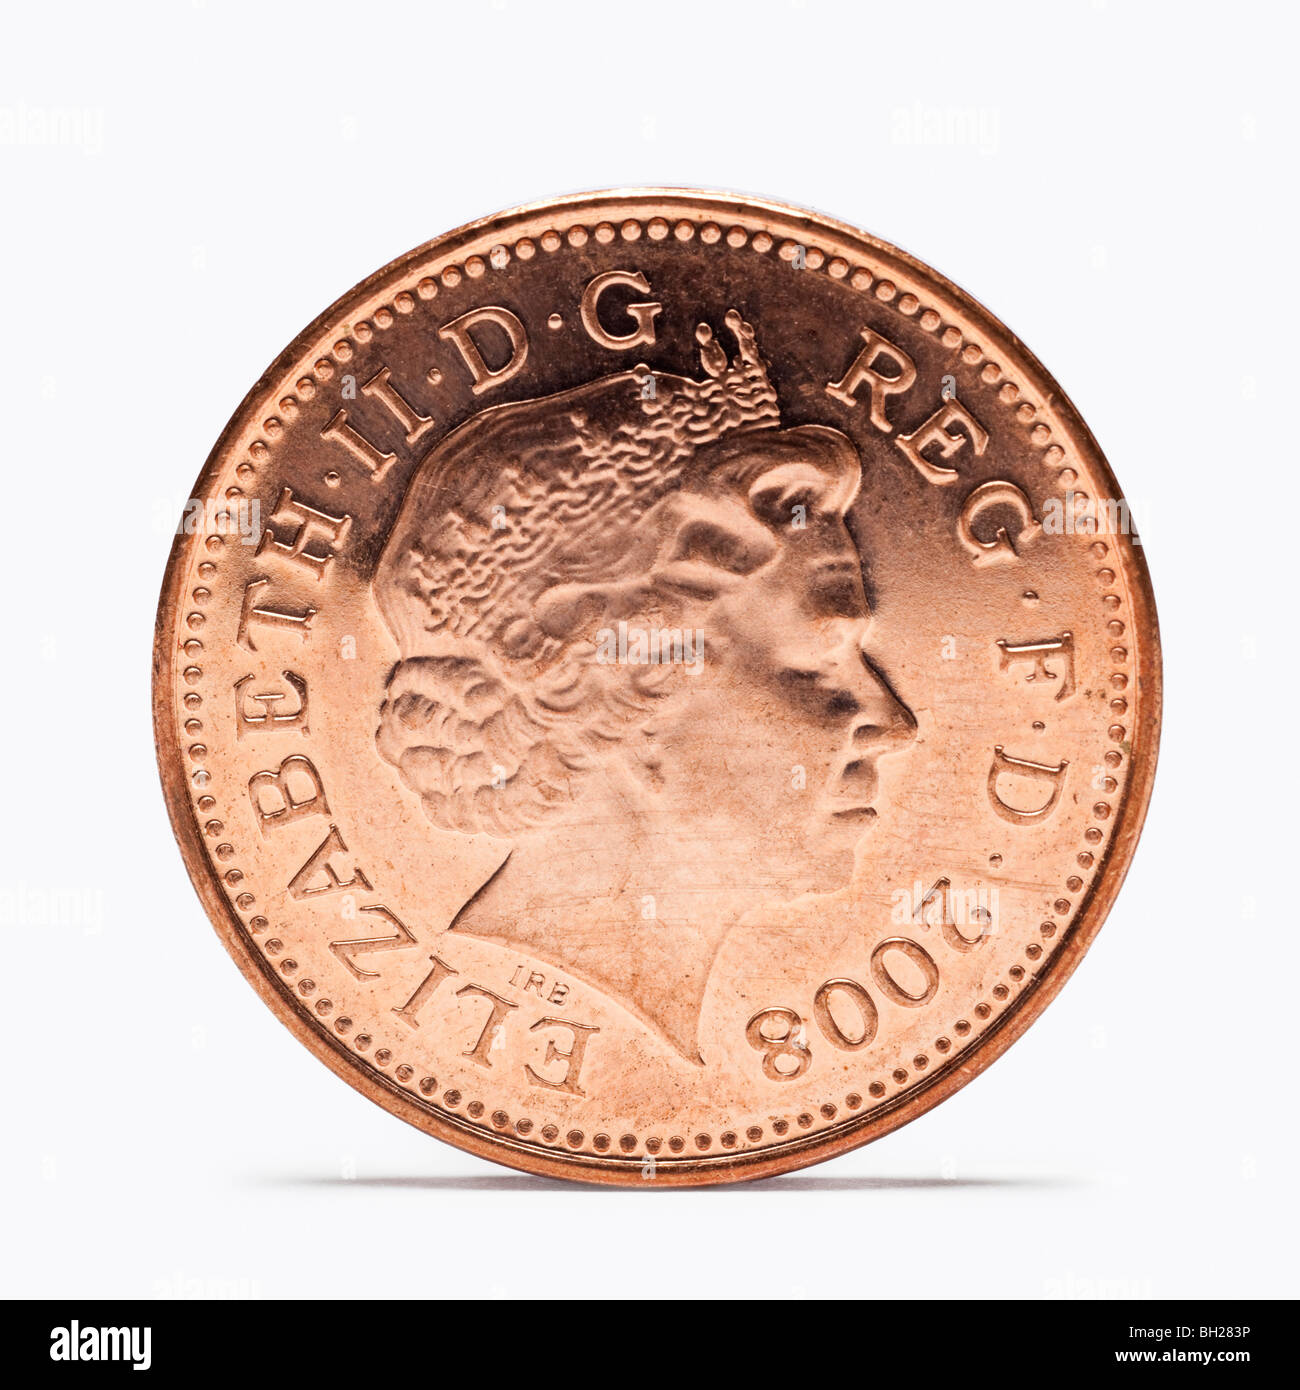 Moneda de un centavo británico vista frontal Foto de stock